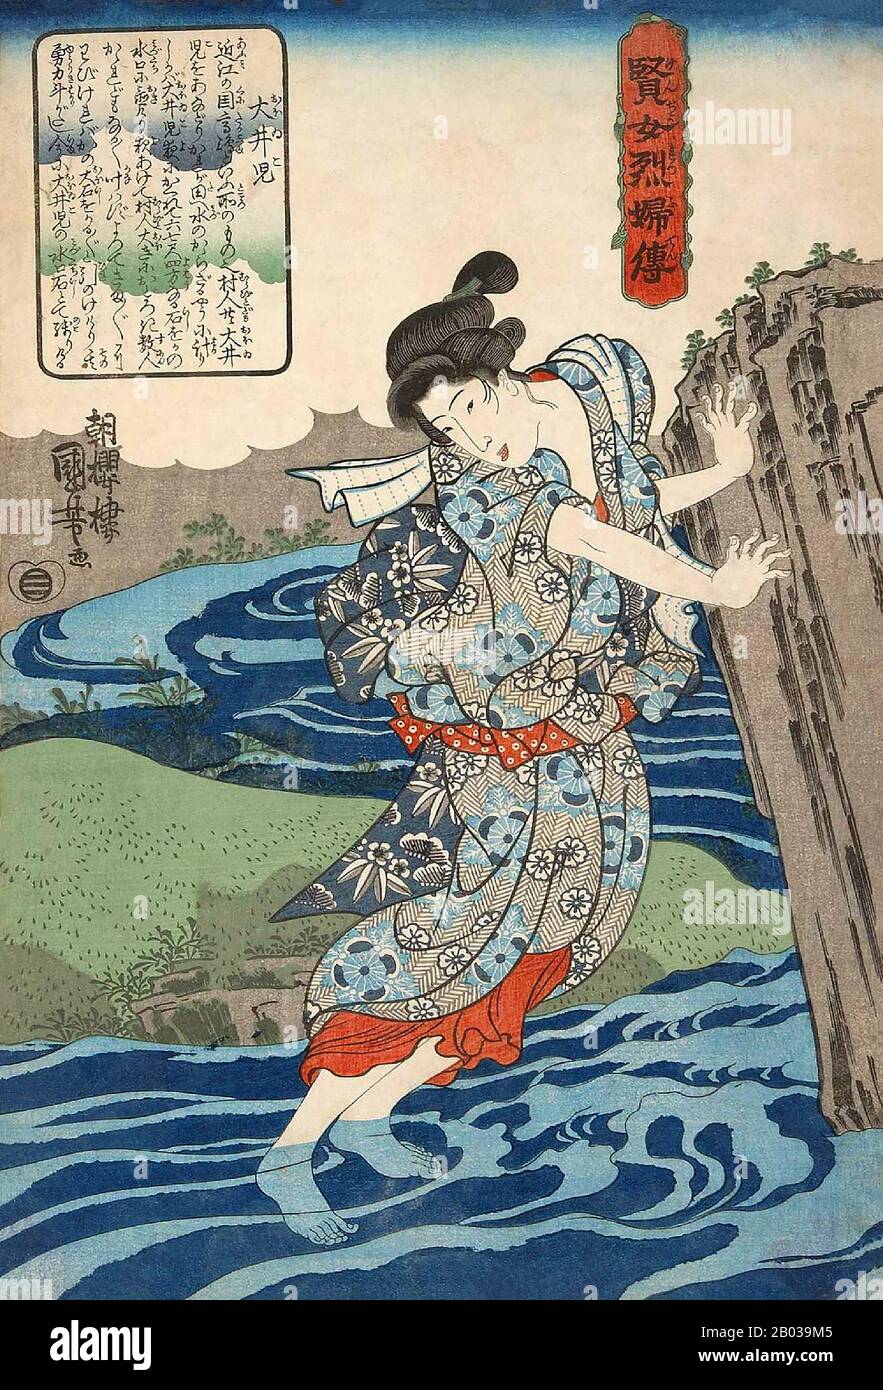 Utagawa Kuniyoshi (1er janvier 1798 - 14 avril 1861) était l'un des derniers grands maîtres du style japonais ukiyo-e de l'impression et de la peinture de blocs de bois. Il est associé à l'école Utagawa. La gamme des sujets préférés de Kuniyoshi comprenait de nombreux genres : paysages, belles femmes, acteurs Kabuki, chats et animaux mythiques. Il est connu pour les représentations des batailles de samouraï et des héros légendaires. Ses œuvres d'art ont été affectées par les influences occidentales dans la peinture et la caricature des paysages. Banque D'Images